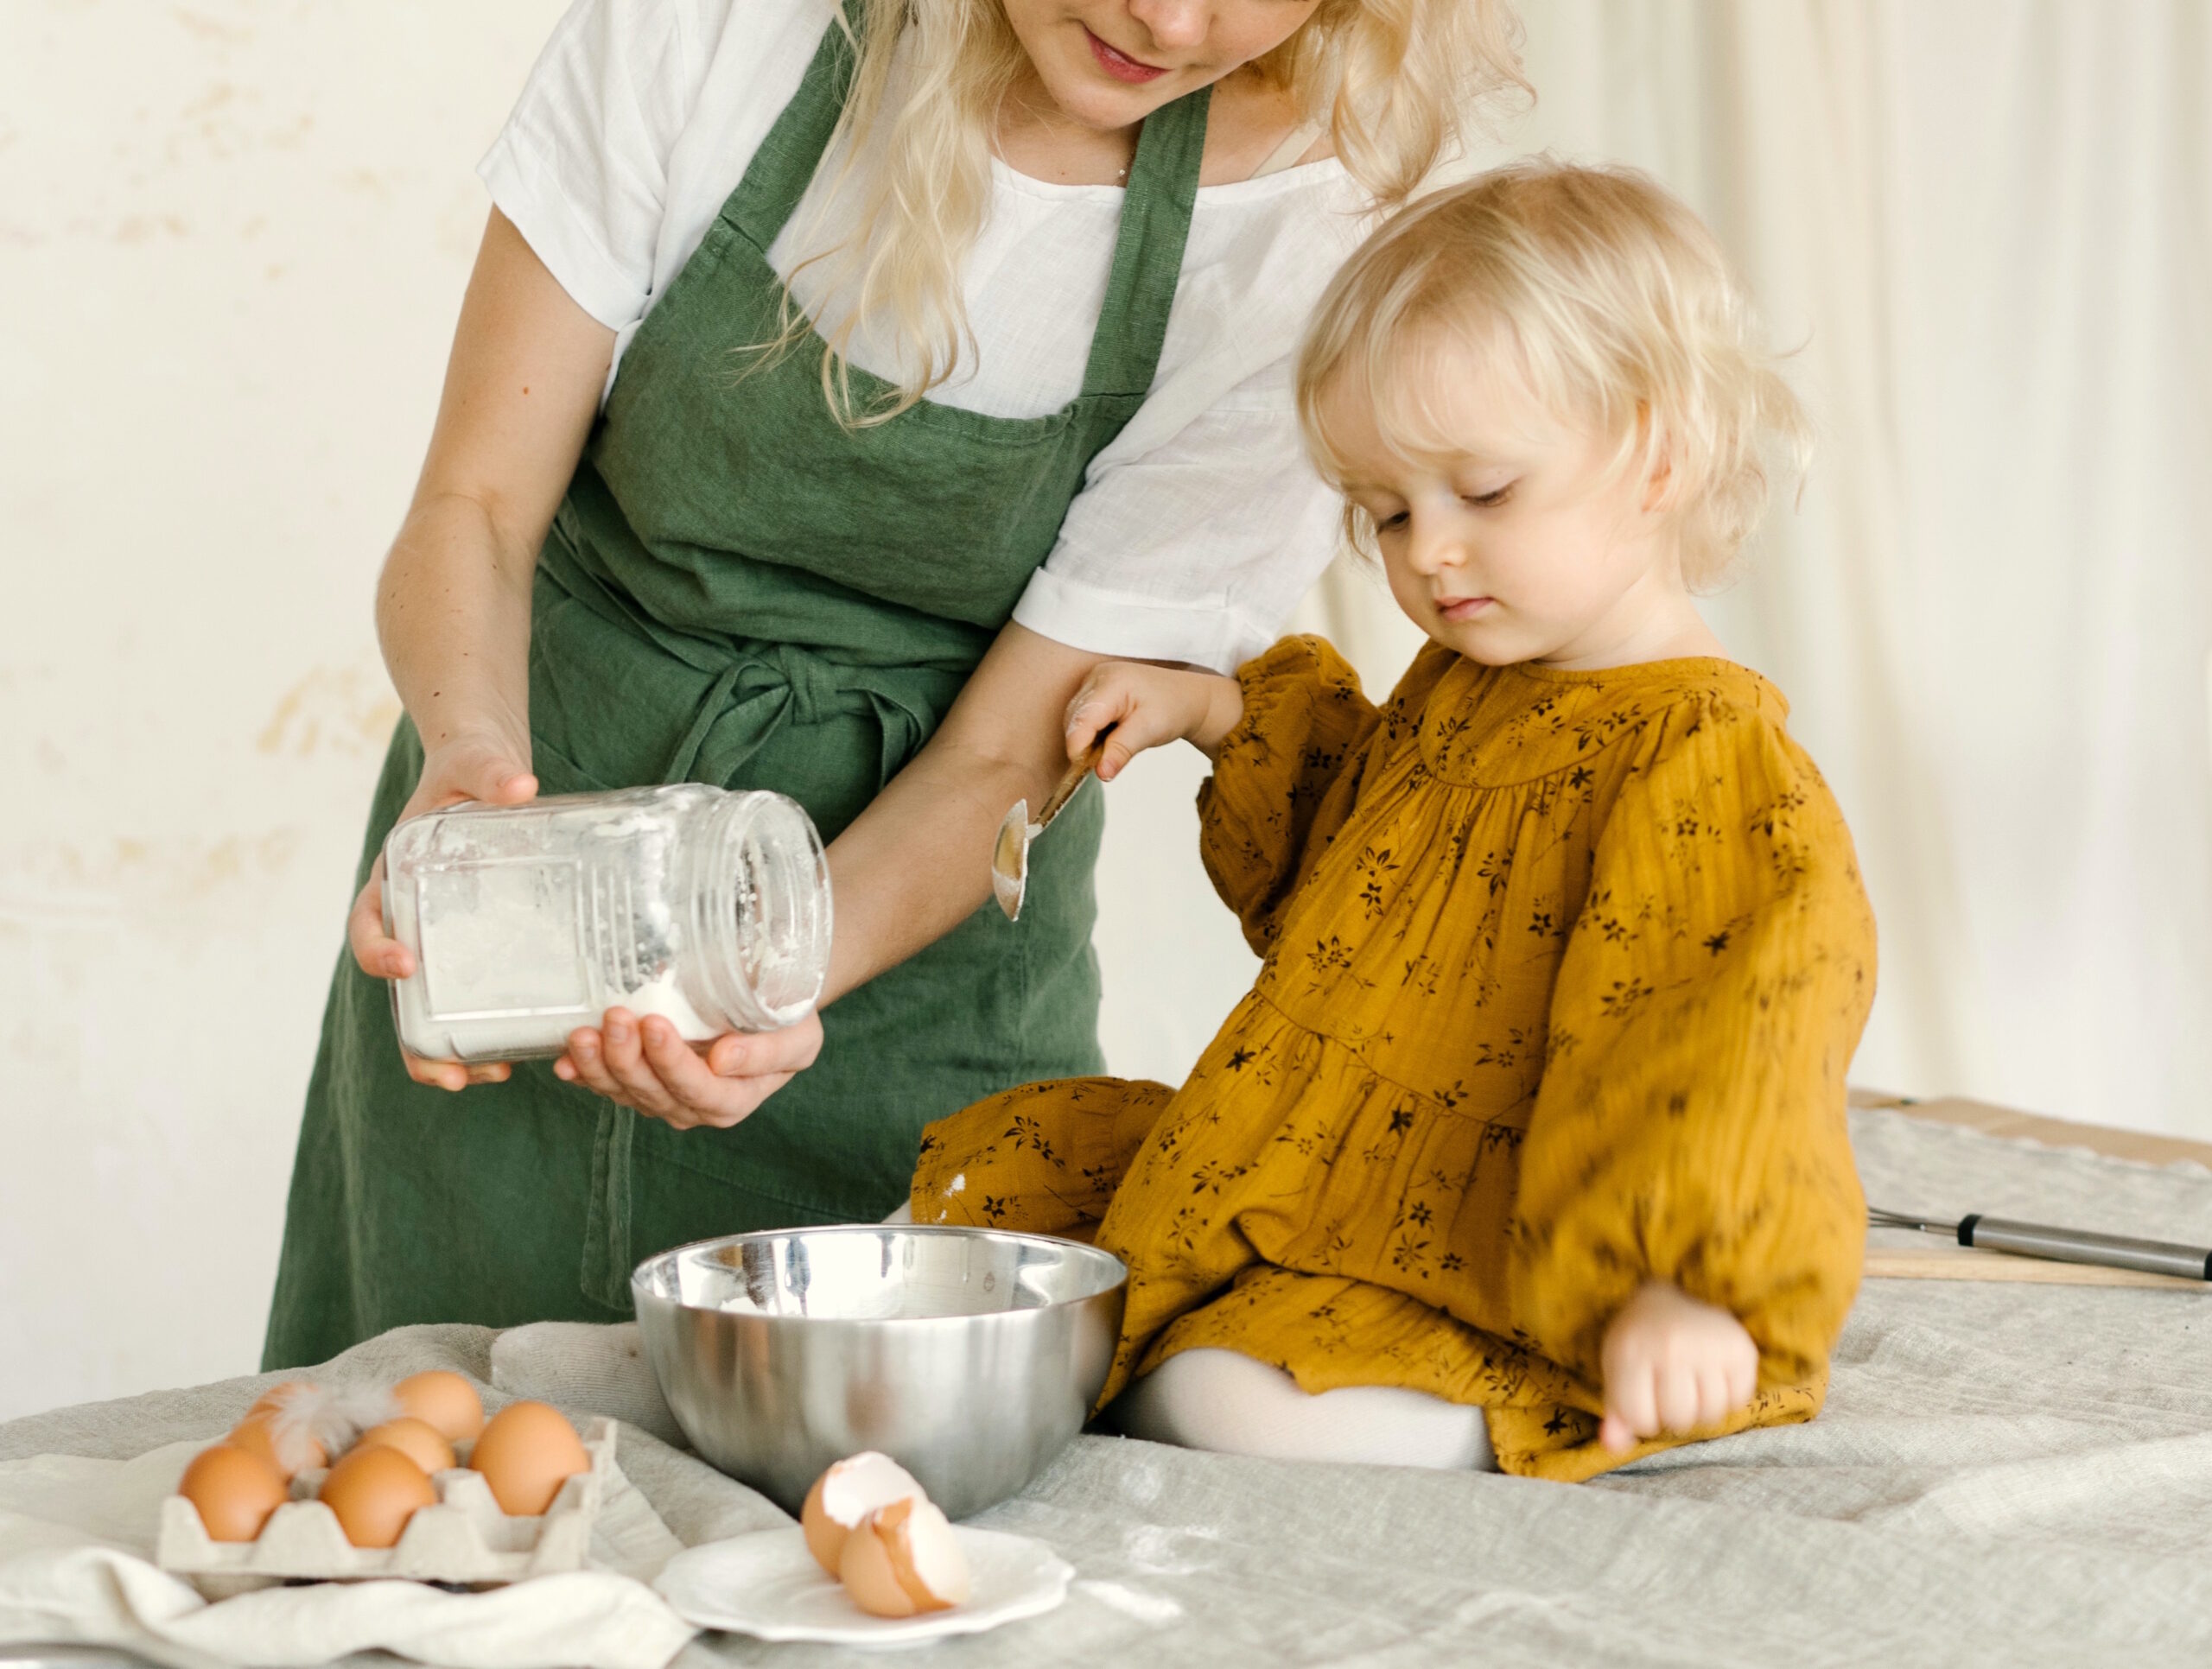 Alergia al huevo en los bebés y consumo materno